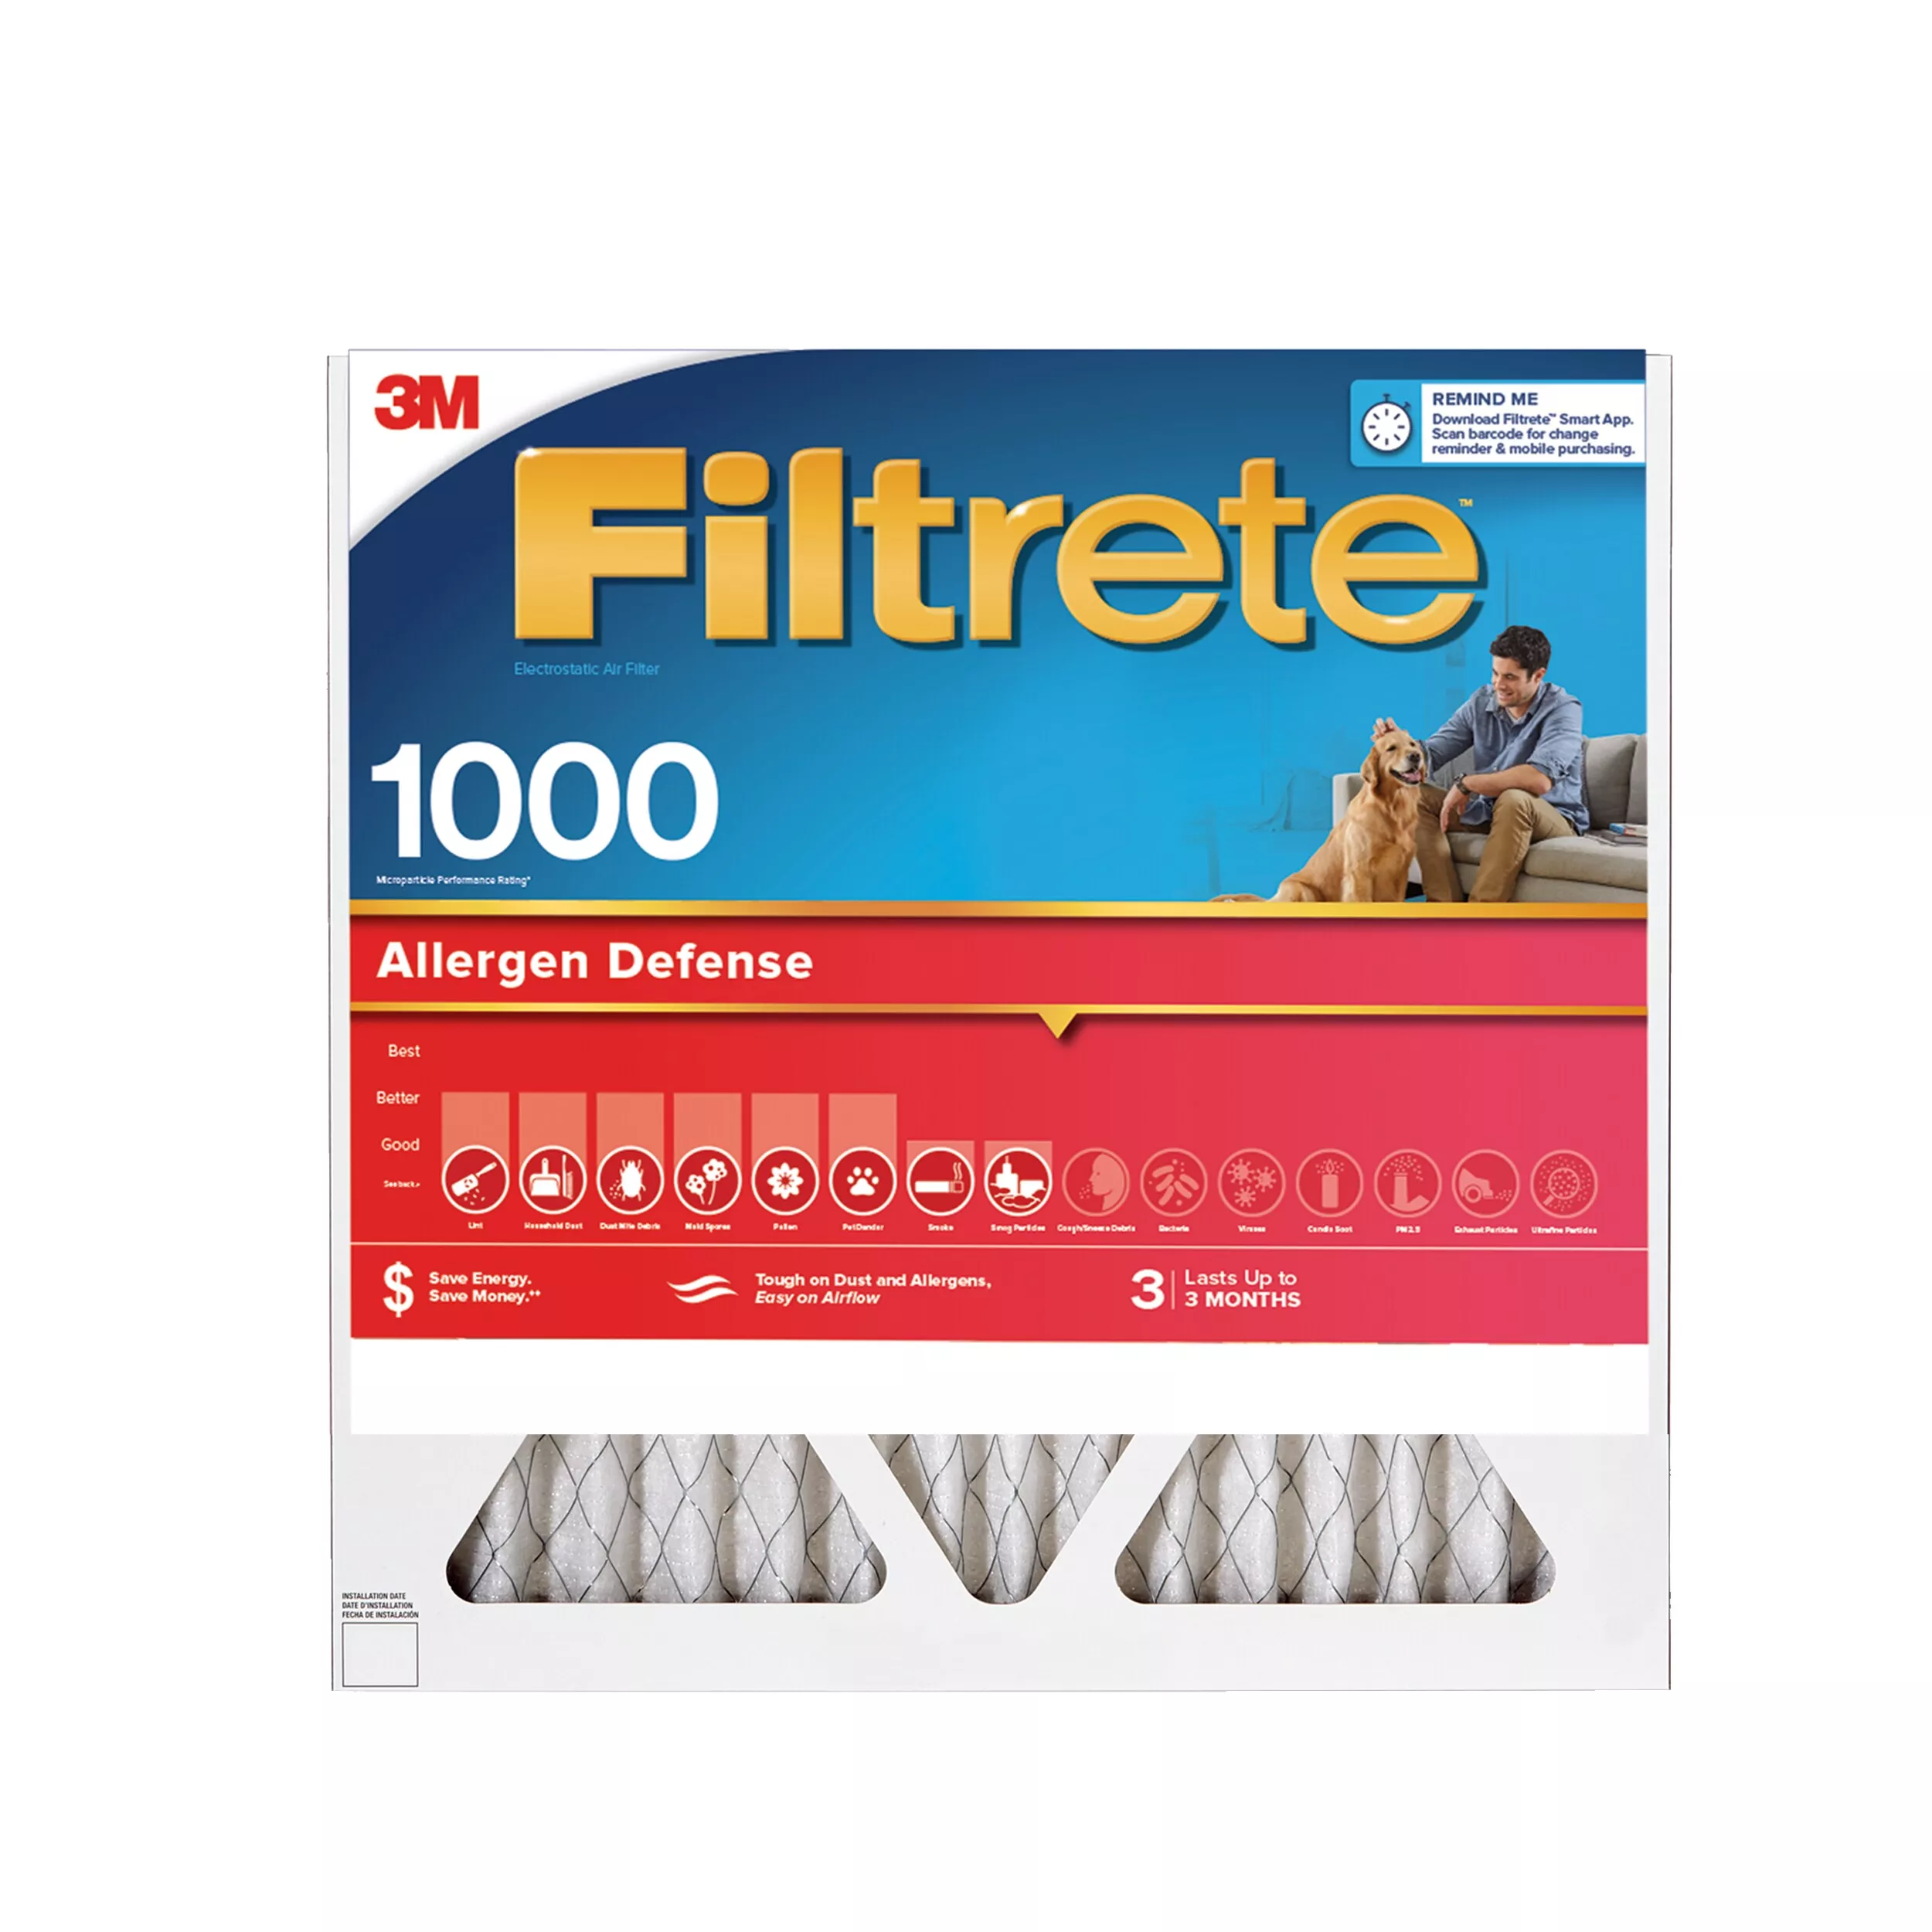 Filtrete™ Allergen Defense Air Filter, 1000 MPR, 9802-2PK-HDW, 20 in x
20 in x 1 in (50,8 cm x 50,8 cm x 2,5 cm)